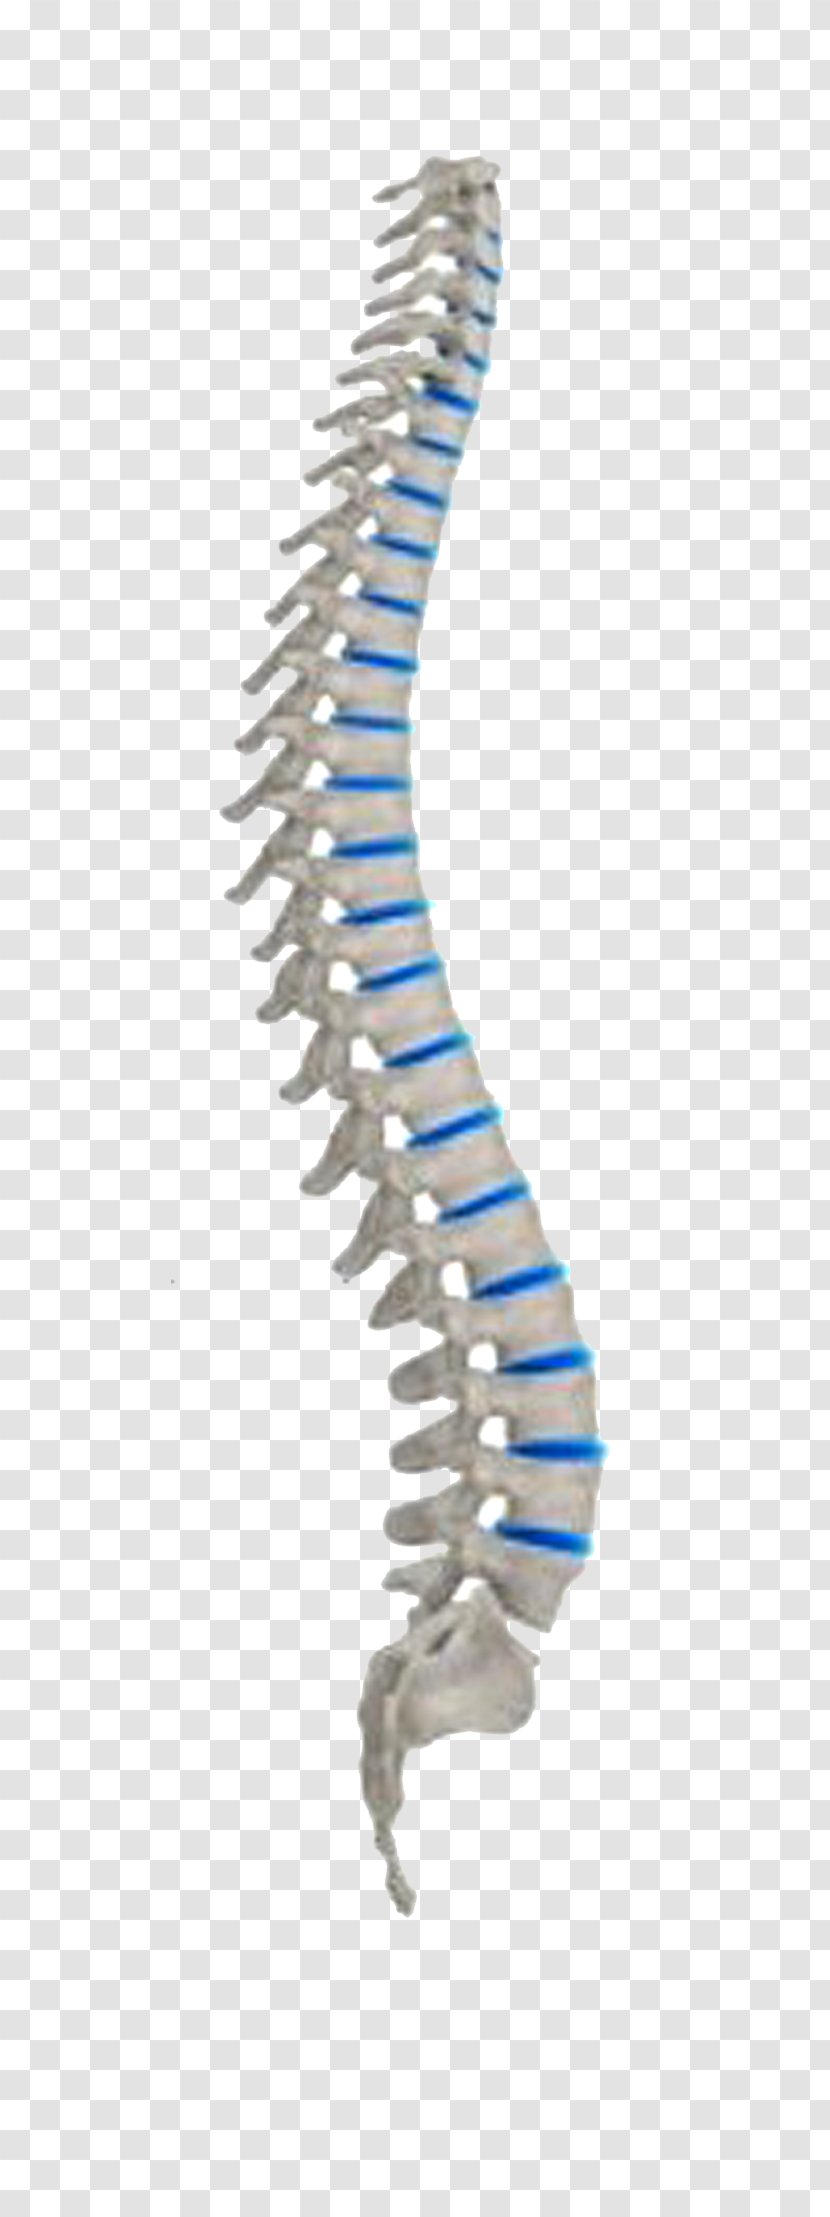 Vertebral Column Neutral Spine Spinal Cord Human Body Nervous System Transparent PNG